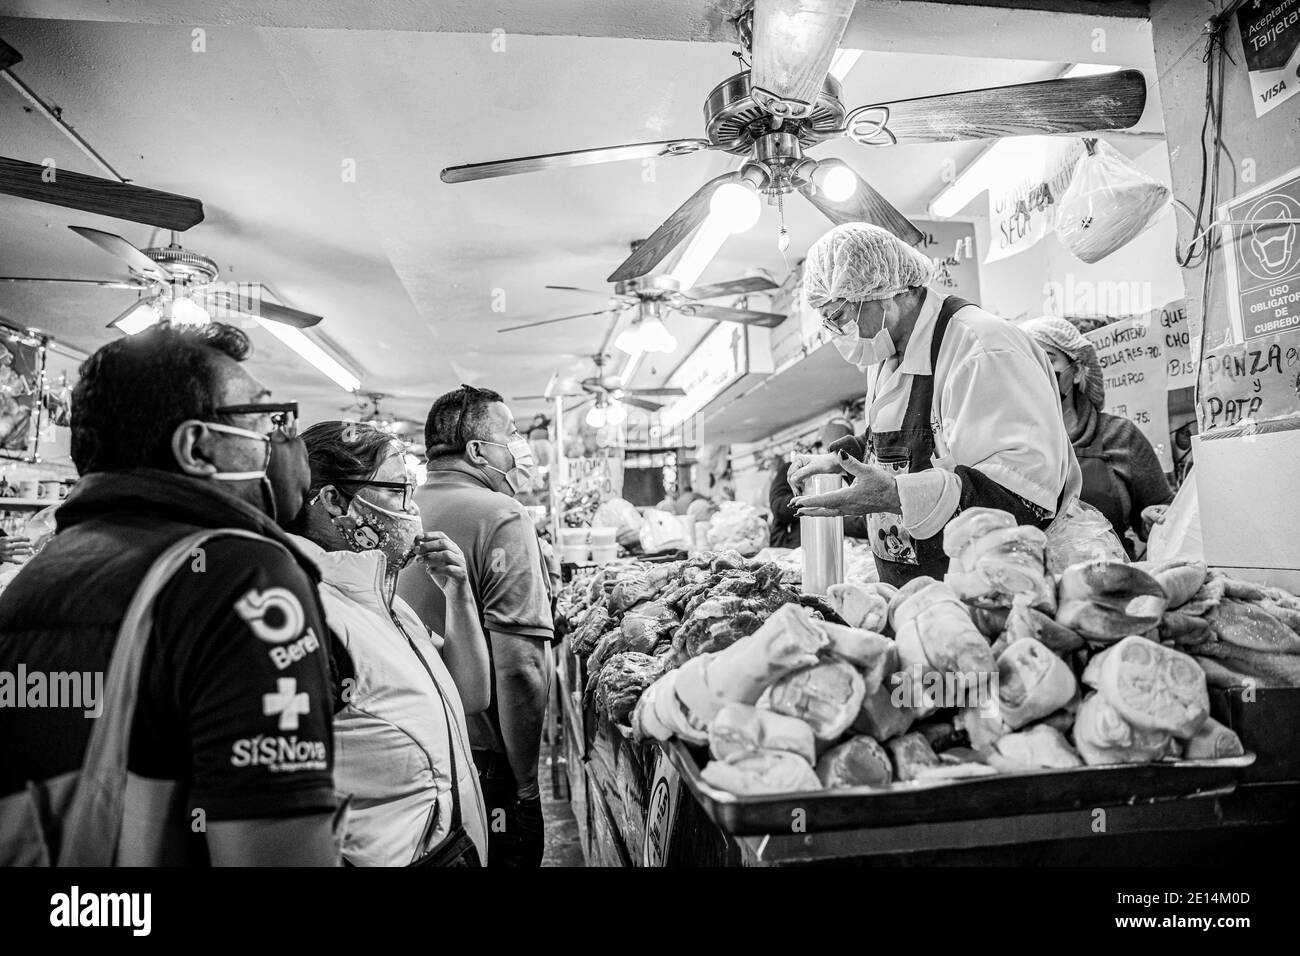 HERMOSILLO,MÉXICO DICIEMBRE 30 : una mujer organiza carne de cerdo en una tienda de carnicería tradicional, durante la venta de alimentos para cenas tradicionales de año Nuevo el 30 de diciembre de 2020 en Hermosillo, México. (Foto de Luis Gutiérrez/Norte Foto) HERMOSILLO, MÉXICO 30 DE DICIEMBRE: Una mujer prepara carne de cerdo en una carnicería del mercado tradicional, durante la venta de alimentos para las cenas tradicionales de año Nuevo el 30 de diciembre de 2020 en Hermosillo, México. (Foto de Luis Gutiérrez/Foto Norte) Foto de stock